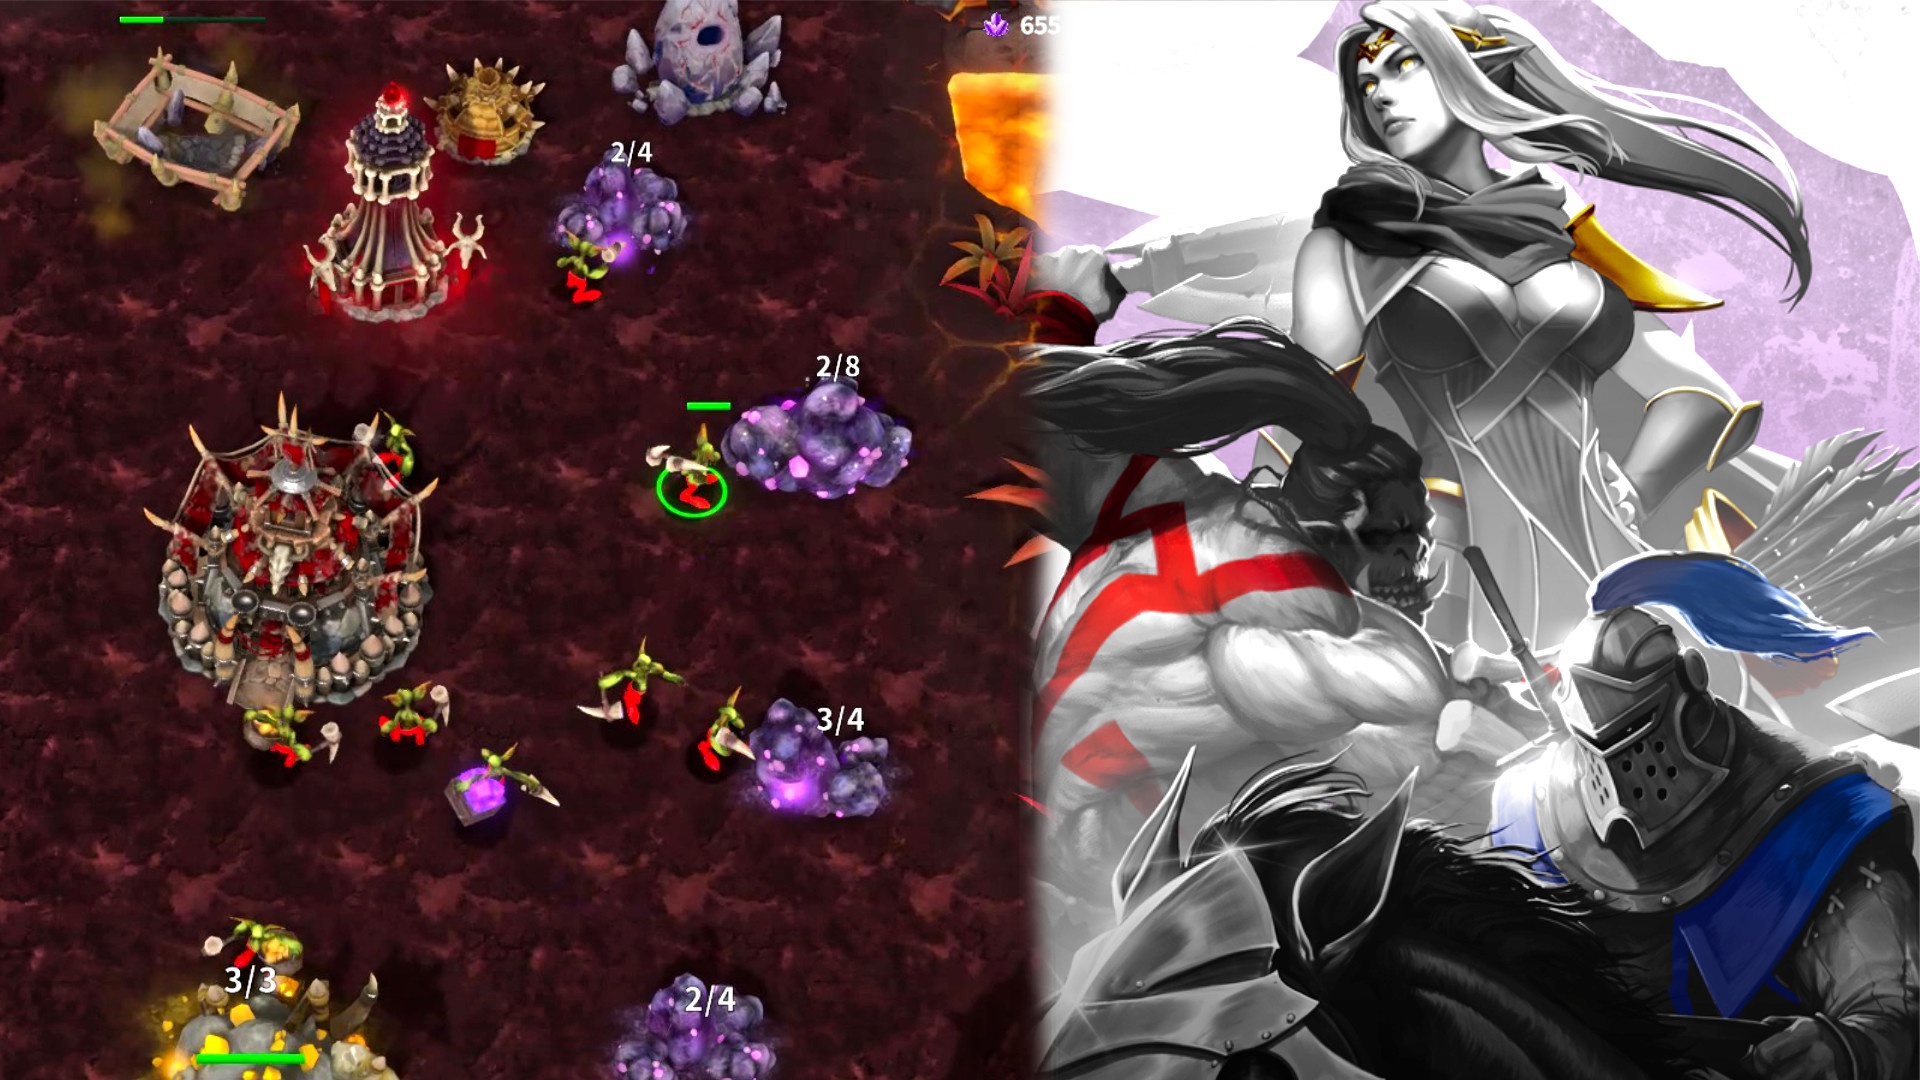 #Freche Warcraft-Kopie – Purple War verspricht Echtzeitstrategie wie früher: Was steckt dahinter?